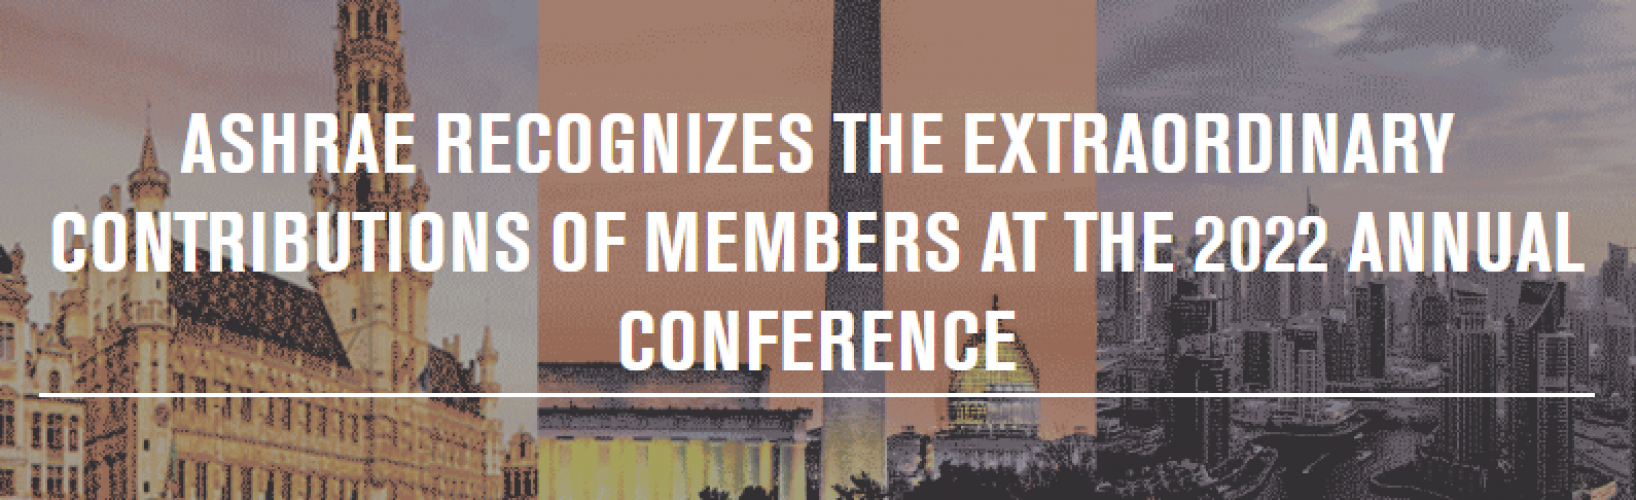 ashrae-reconoce-las-contribuciones-extraordinarias-de-miembros-en-la-conferencia-anual-de-2022